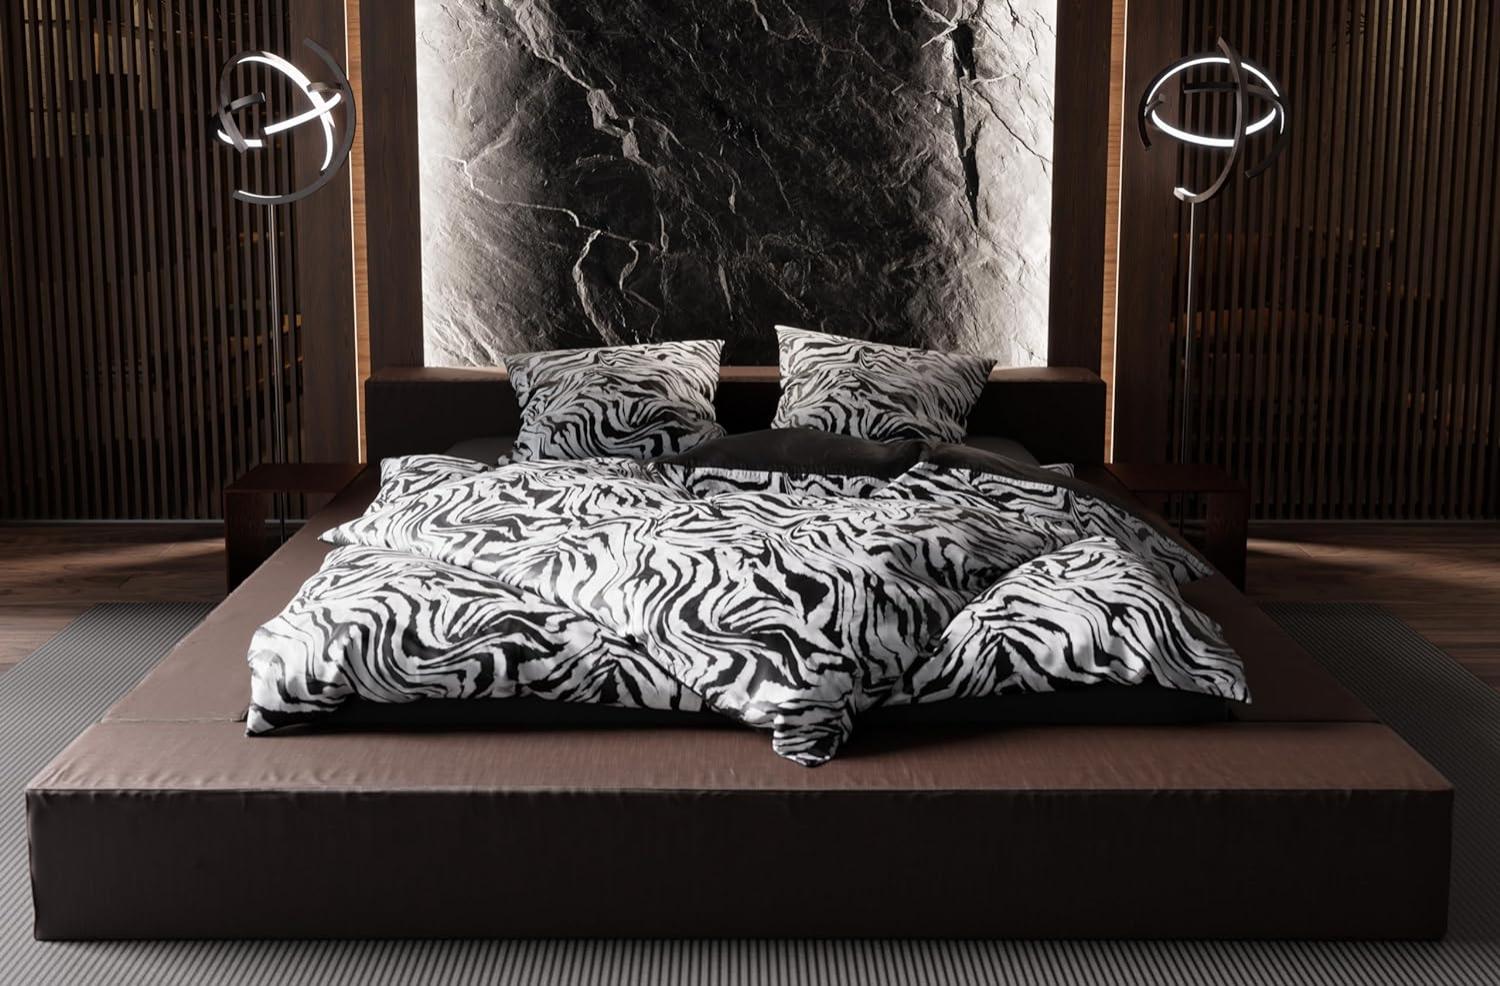 Moderne Mako Satin Wende Bettwäsche Zebra Muster schwarz weiß 140x200 + 70x90 Bild 1